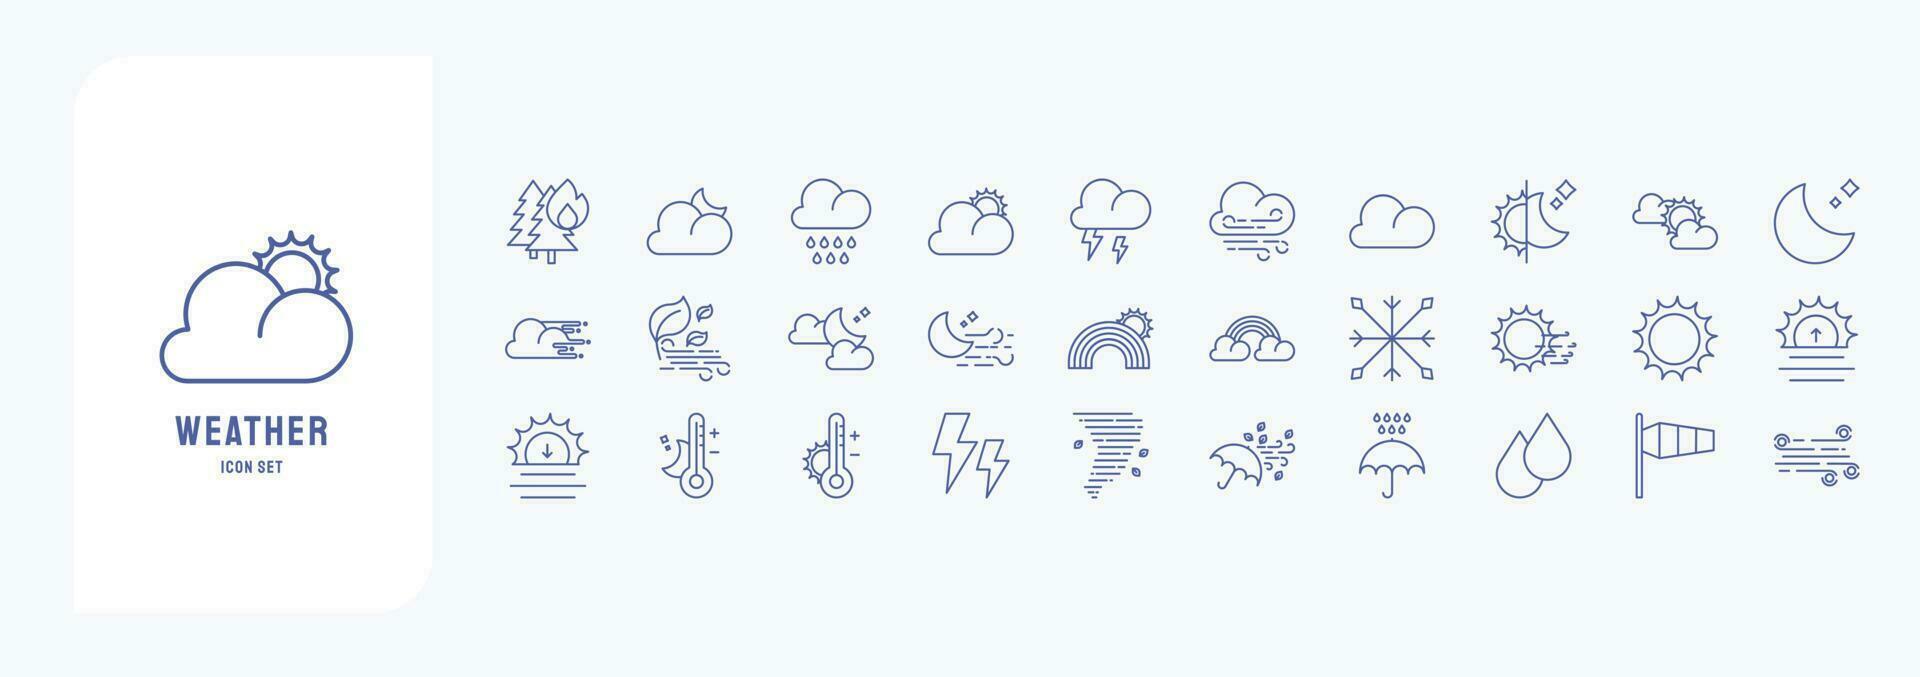 verzameling van pictogrammen verwant naar weer voorspelling, inclusief pictogrammen Leuk vinden donder, regenen, wind, temperatuur en meer vector